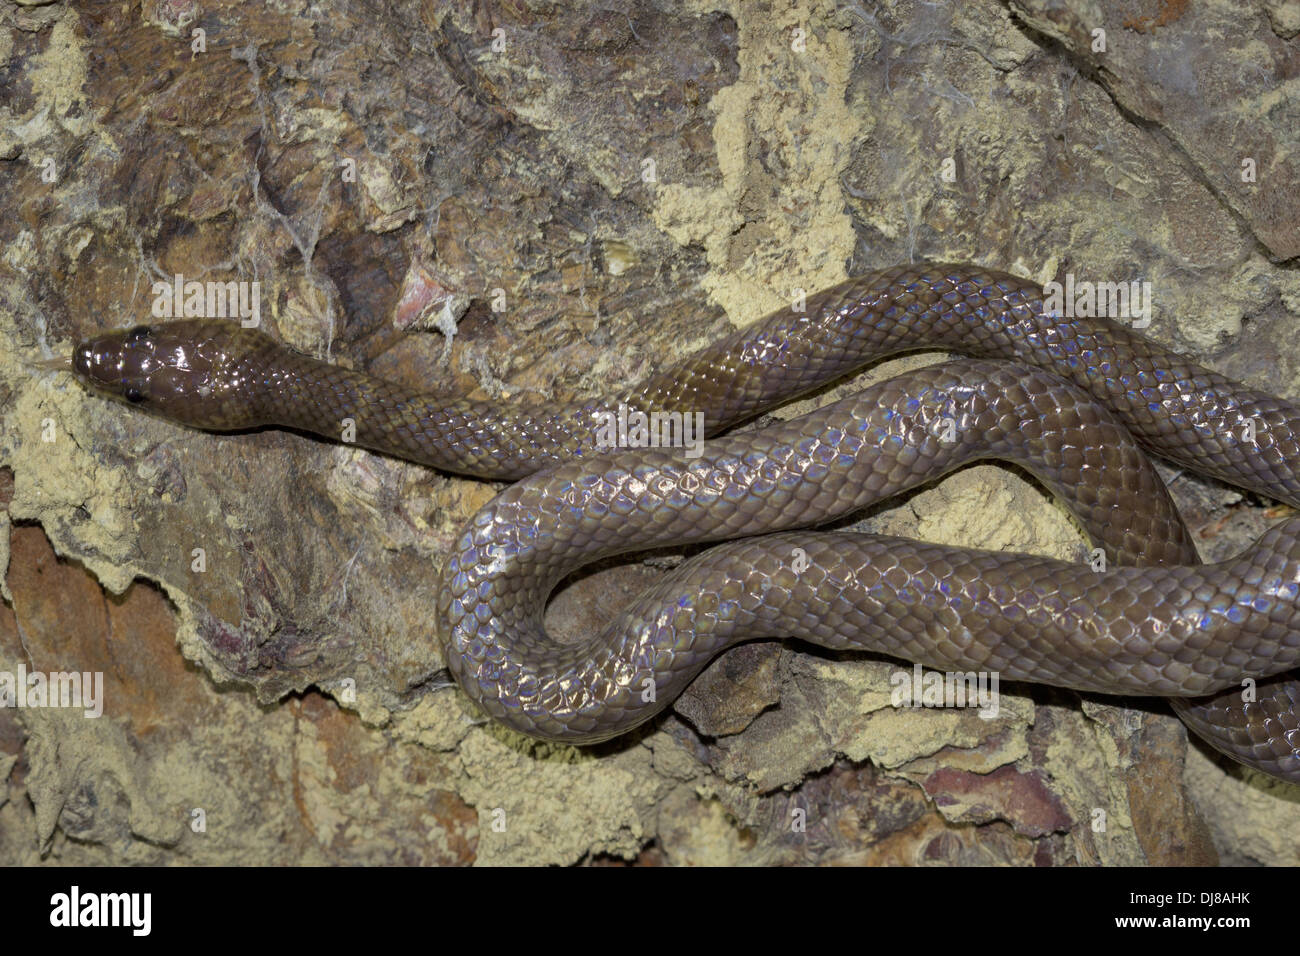 GEMEINSAMEN WOLF Schlange Lycodon Aulicus, nicht giftige, gemeinsamen. Indischer Wolf Schlange. Andaman Inseln, Indien Stockfoto